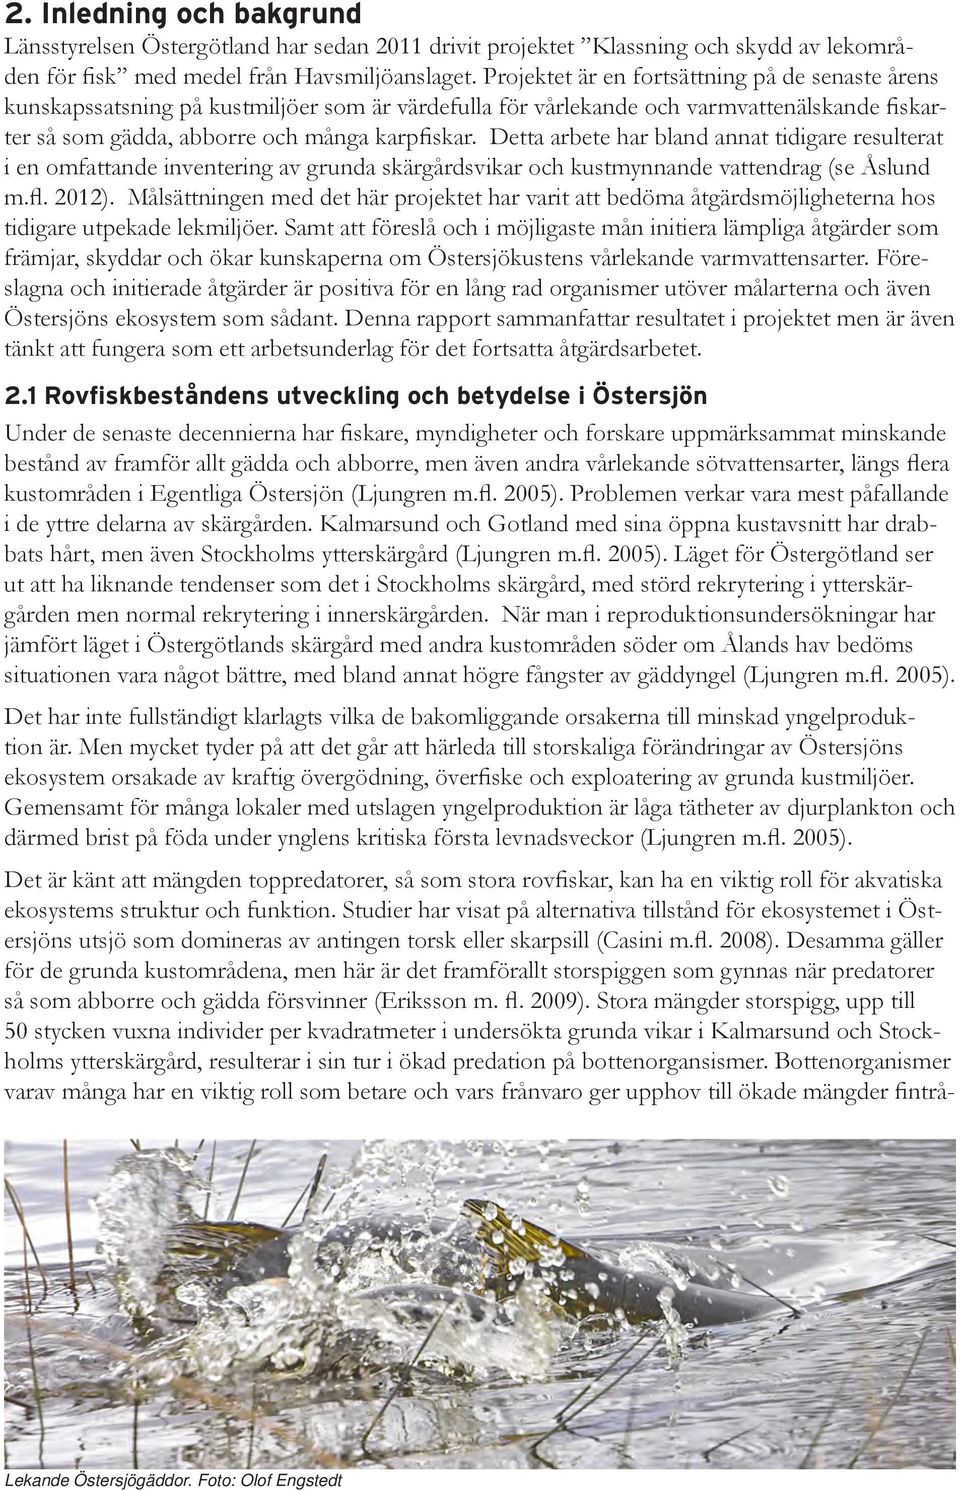 Detta arbete har bland annat tidigare resulterat i en omfattande inventering av grunda skärgårdsvikar och kustmynnande vattendrag (se Åslund m.fl. 2012).